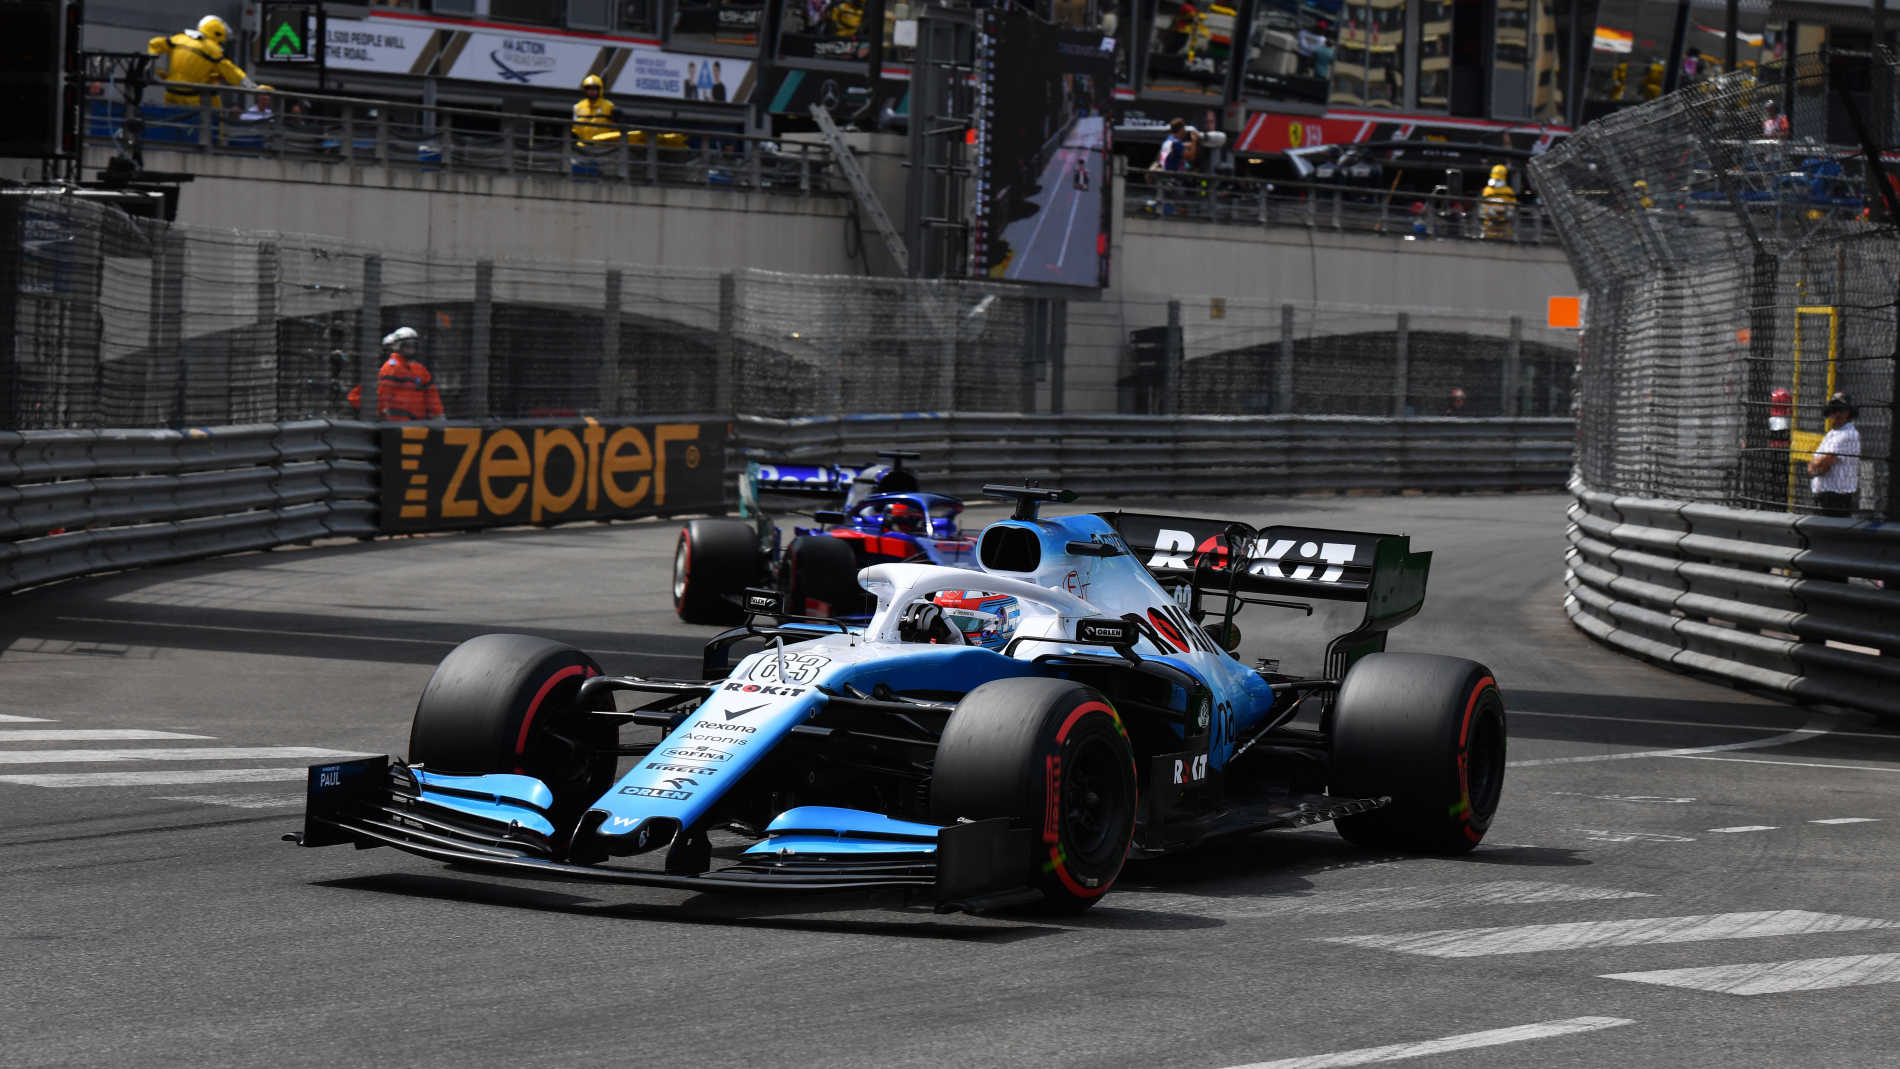 Formula 1 Images, Circuit de Monaco - Sutton Images